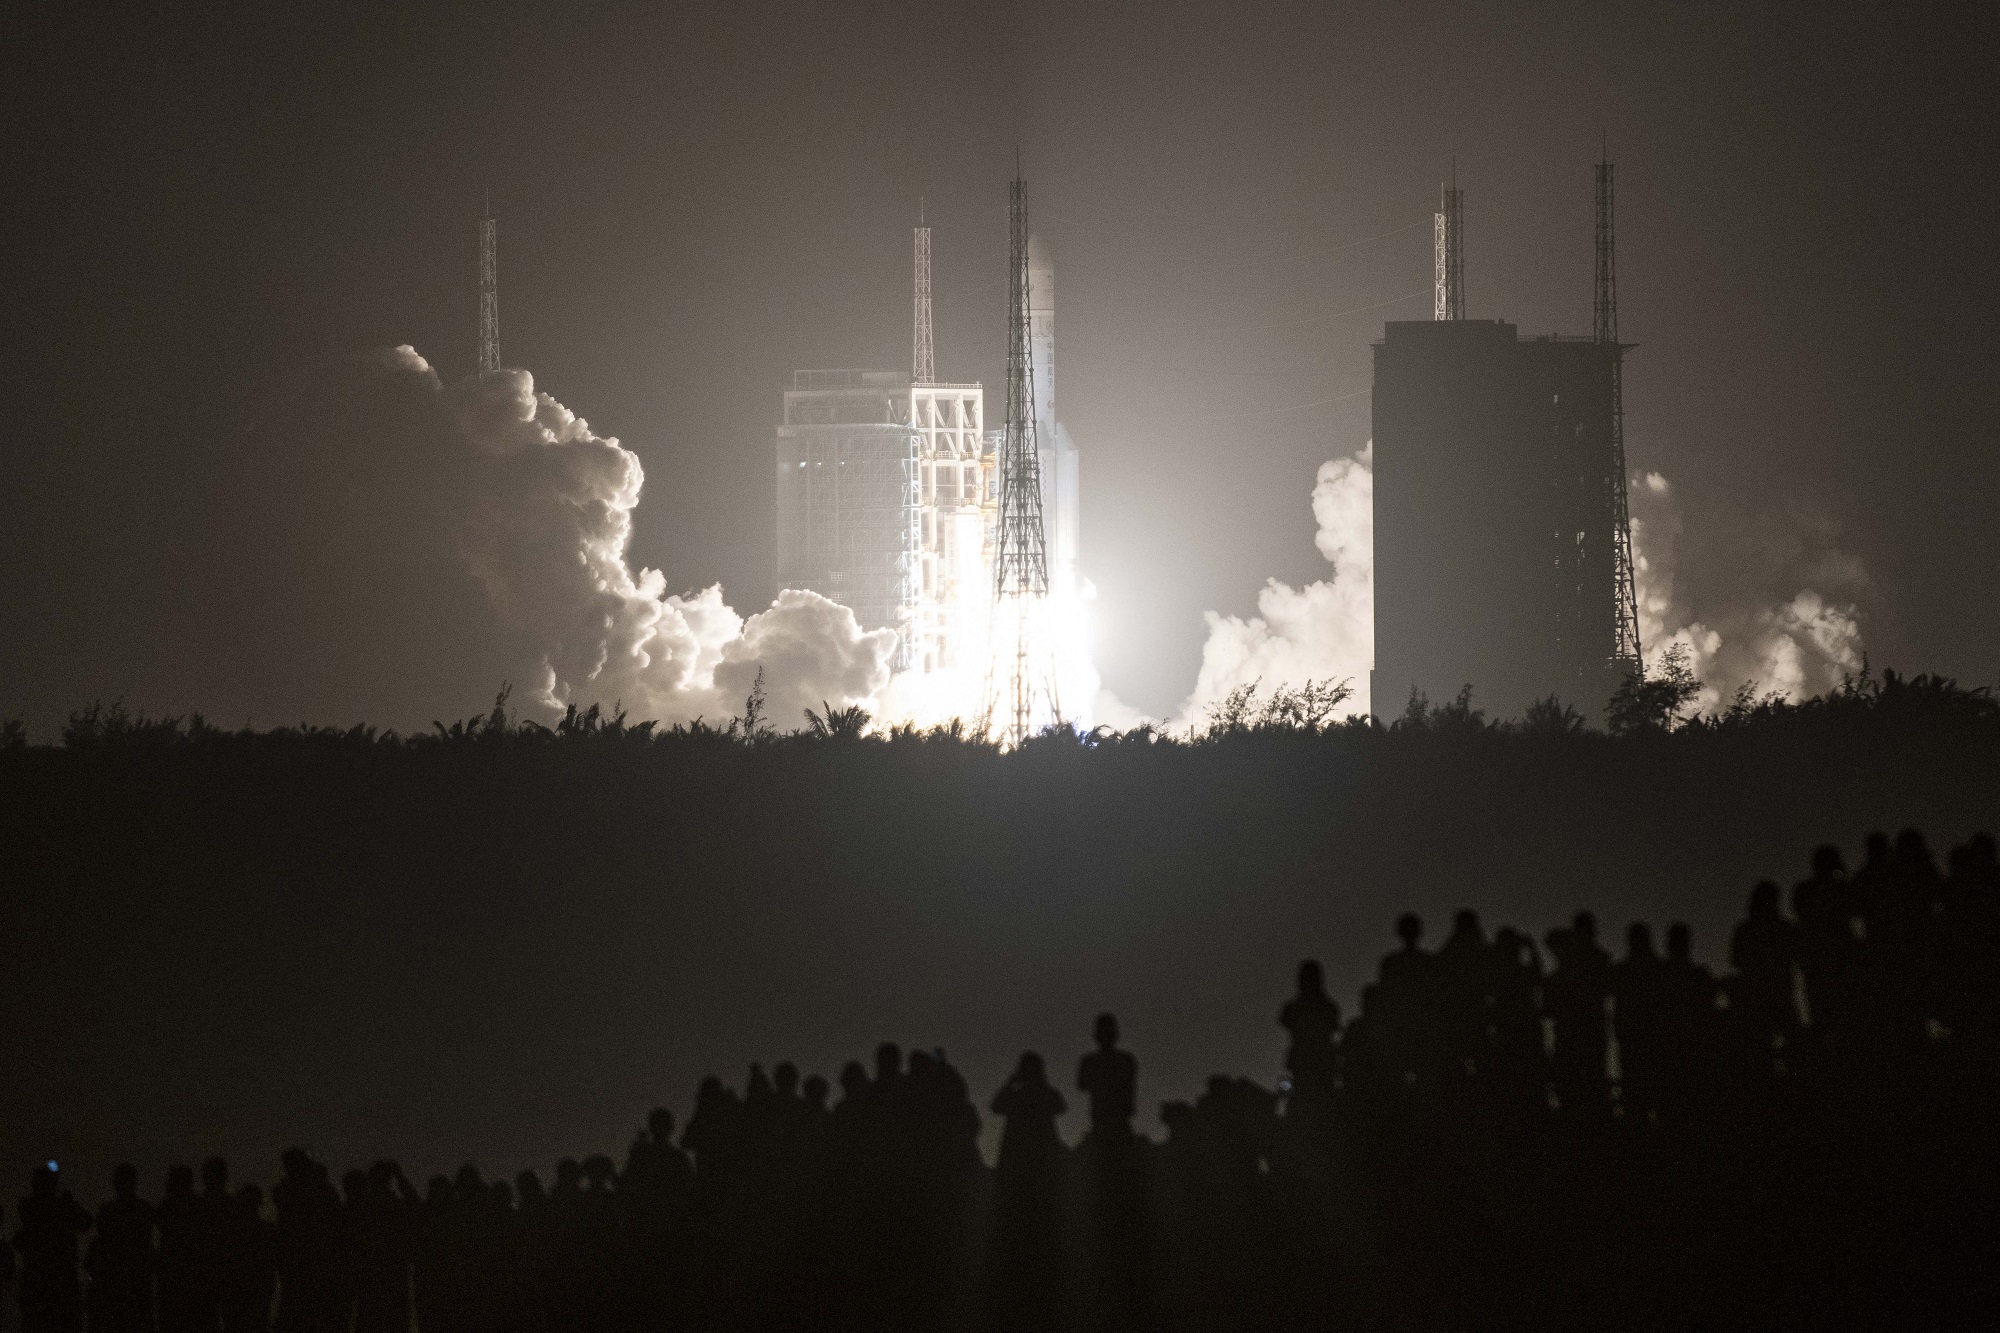 إطلاق صاروخ "Long March 5B" يحمل مسبار القمر الصيني "Chang'e-5" من مركز "Wenchang" للفضاء في جزيرة هاينان جنوب الصين. 24 نوفمبر 2020. (أ ف ب)